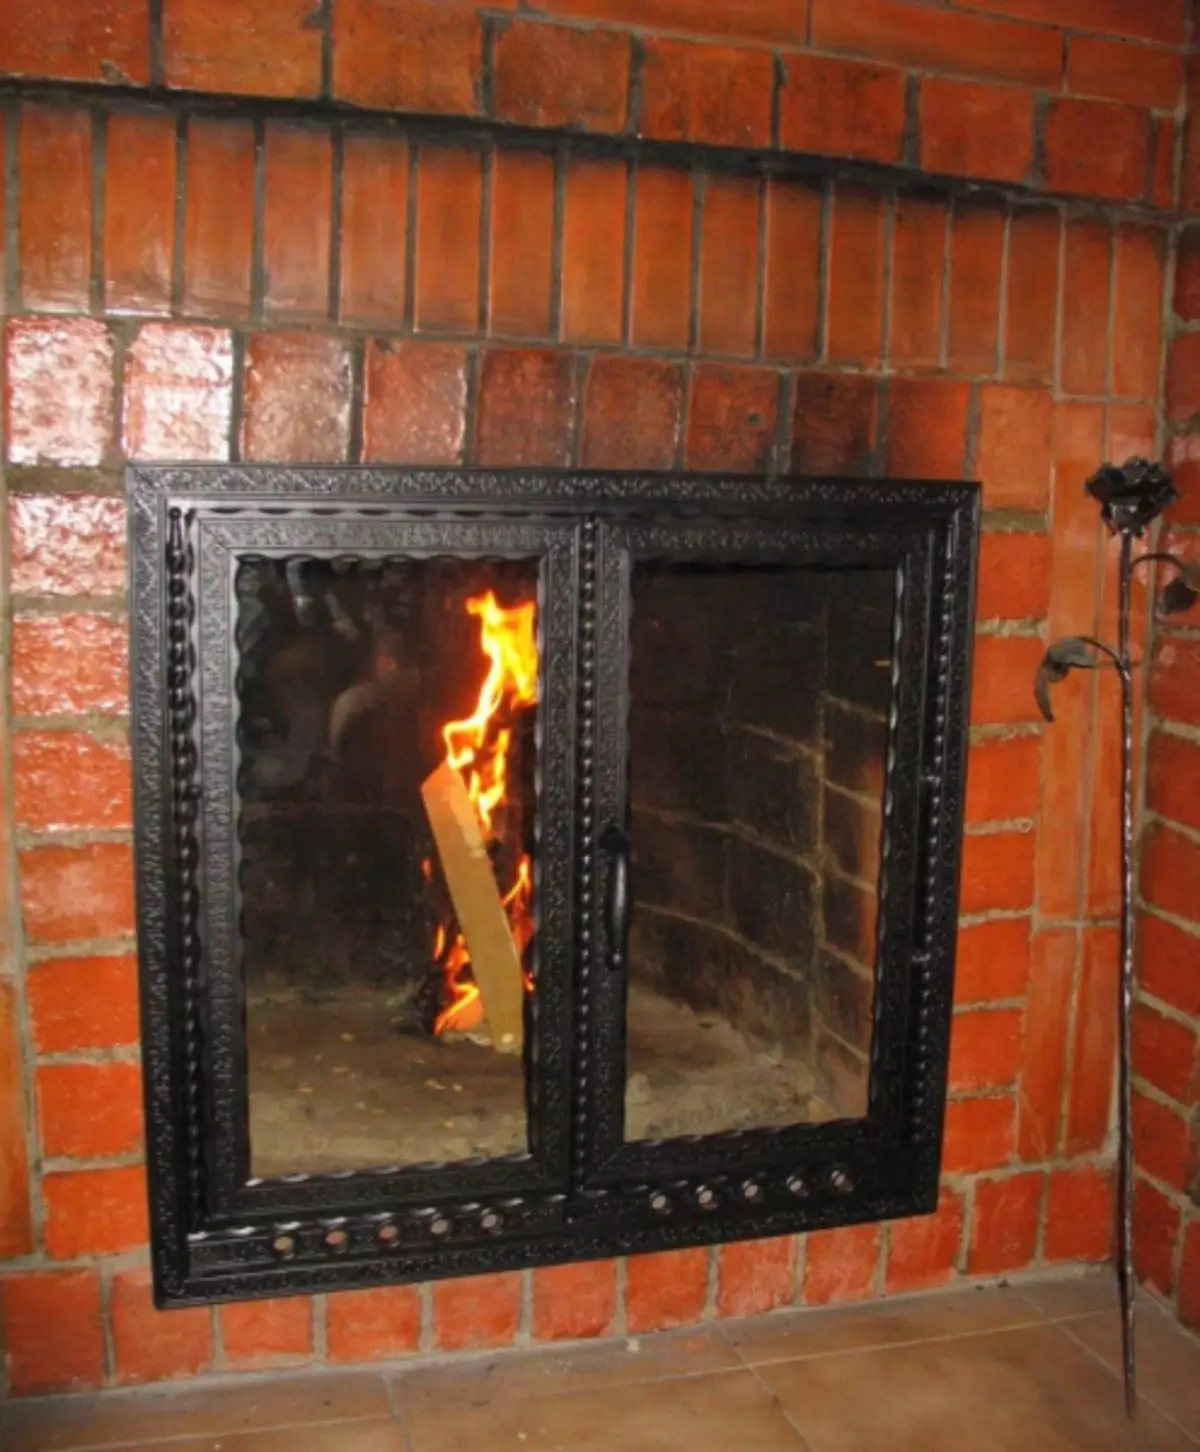 Paghimo usa ka hudno o fireplace nga madanihon nga adunay init nga varnish sa kainit